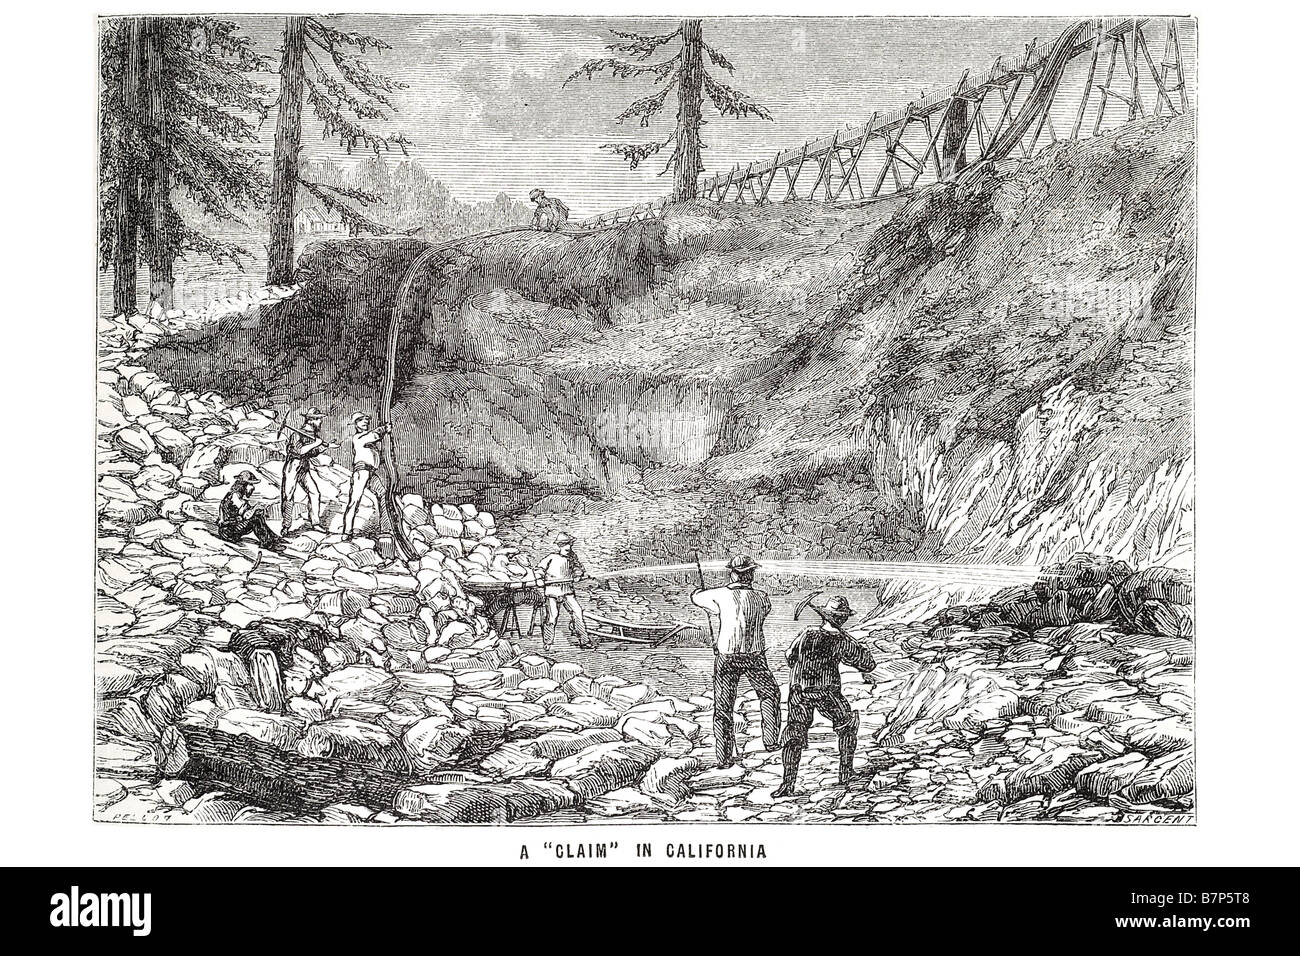 behaupten Sie, dass California Goldrausches 1849 Bergbau Anspruch Extrakt mineralischen öffentlichen Flächen Schlauch Aqua Rohr Rohr waschen Männer Arbeit sauber Refin Arbeits- Stockfoto